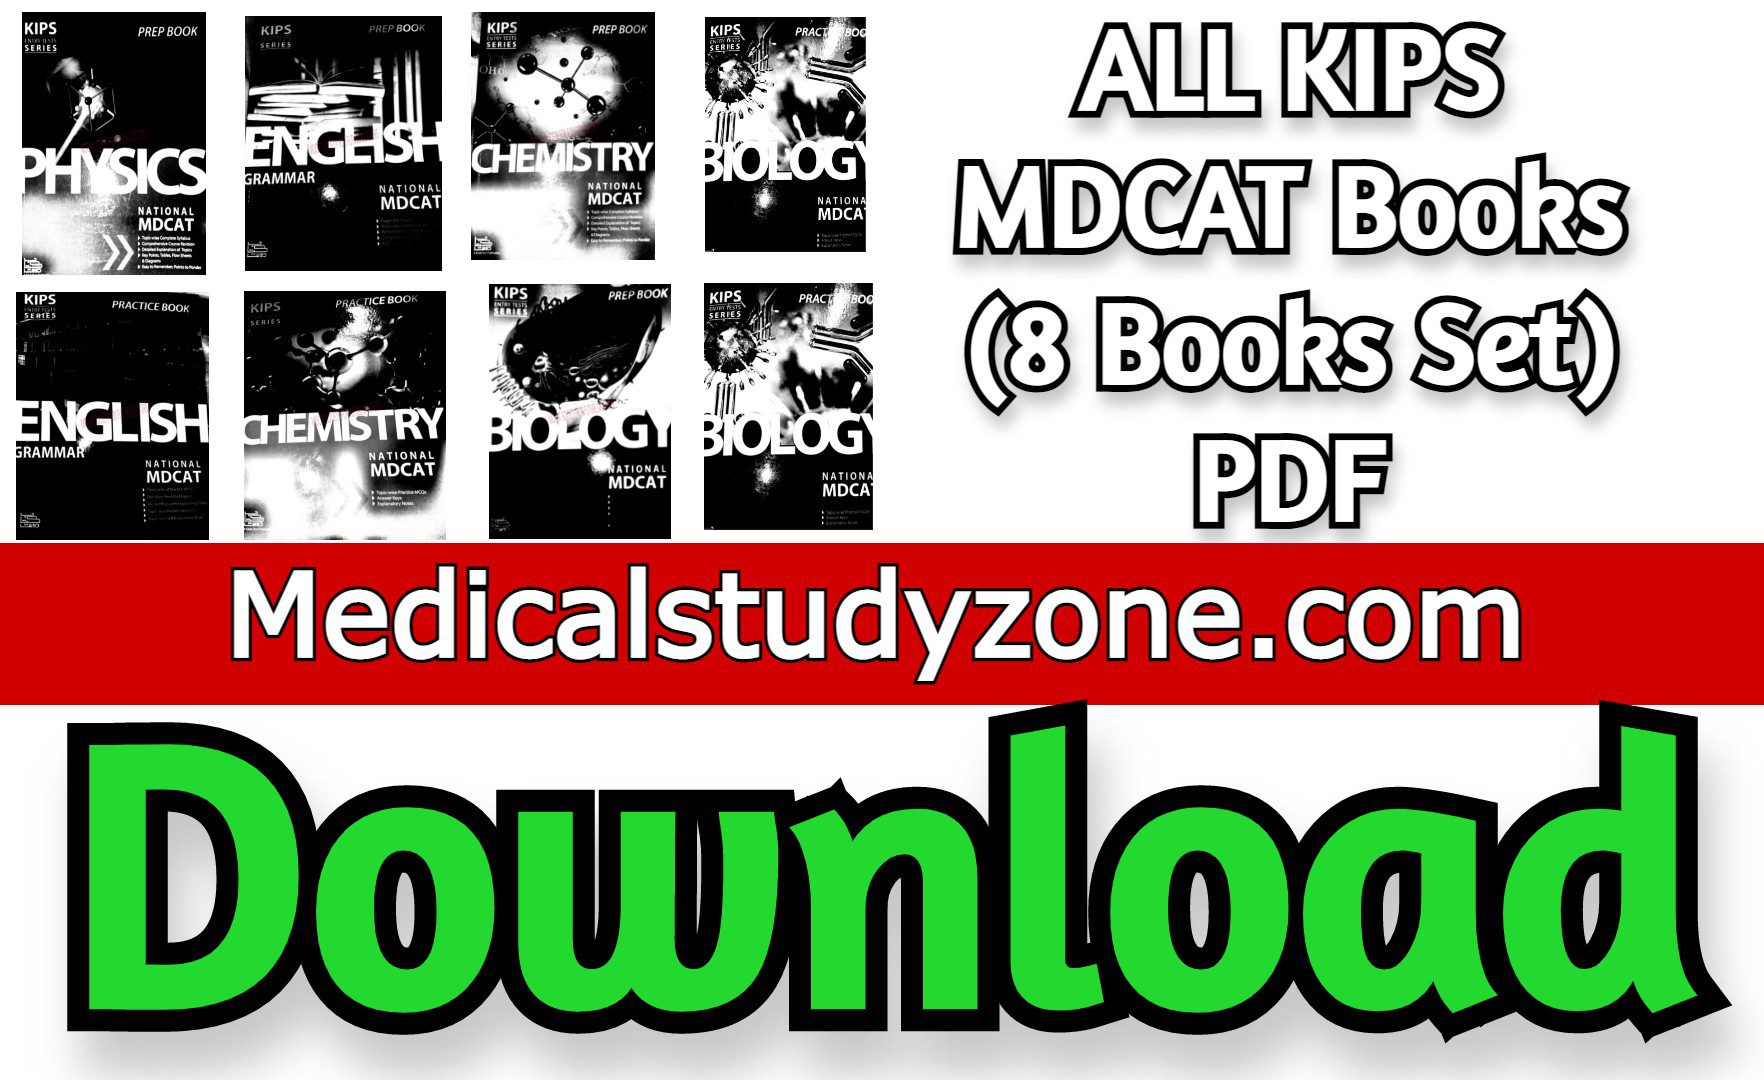 ALL KIPS MDCAT Books 2021 (8 Books Set) PDF Free Download